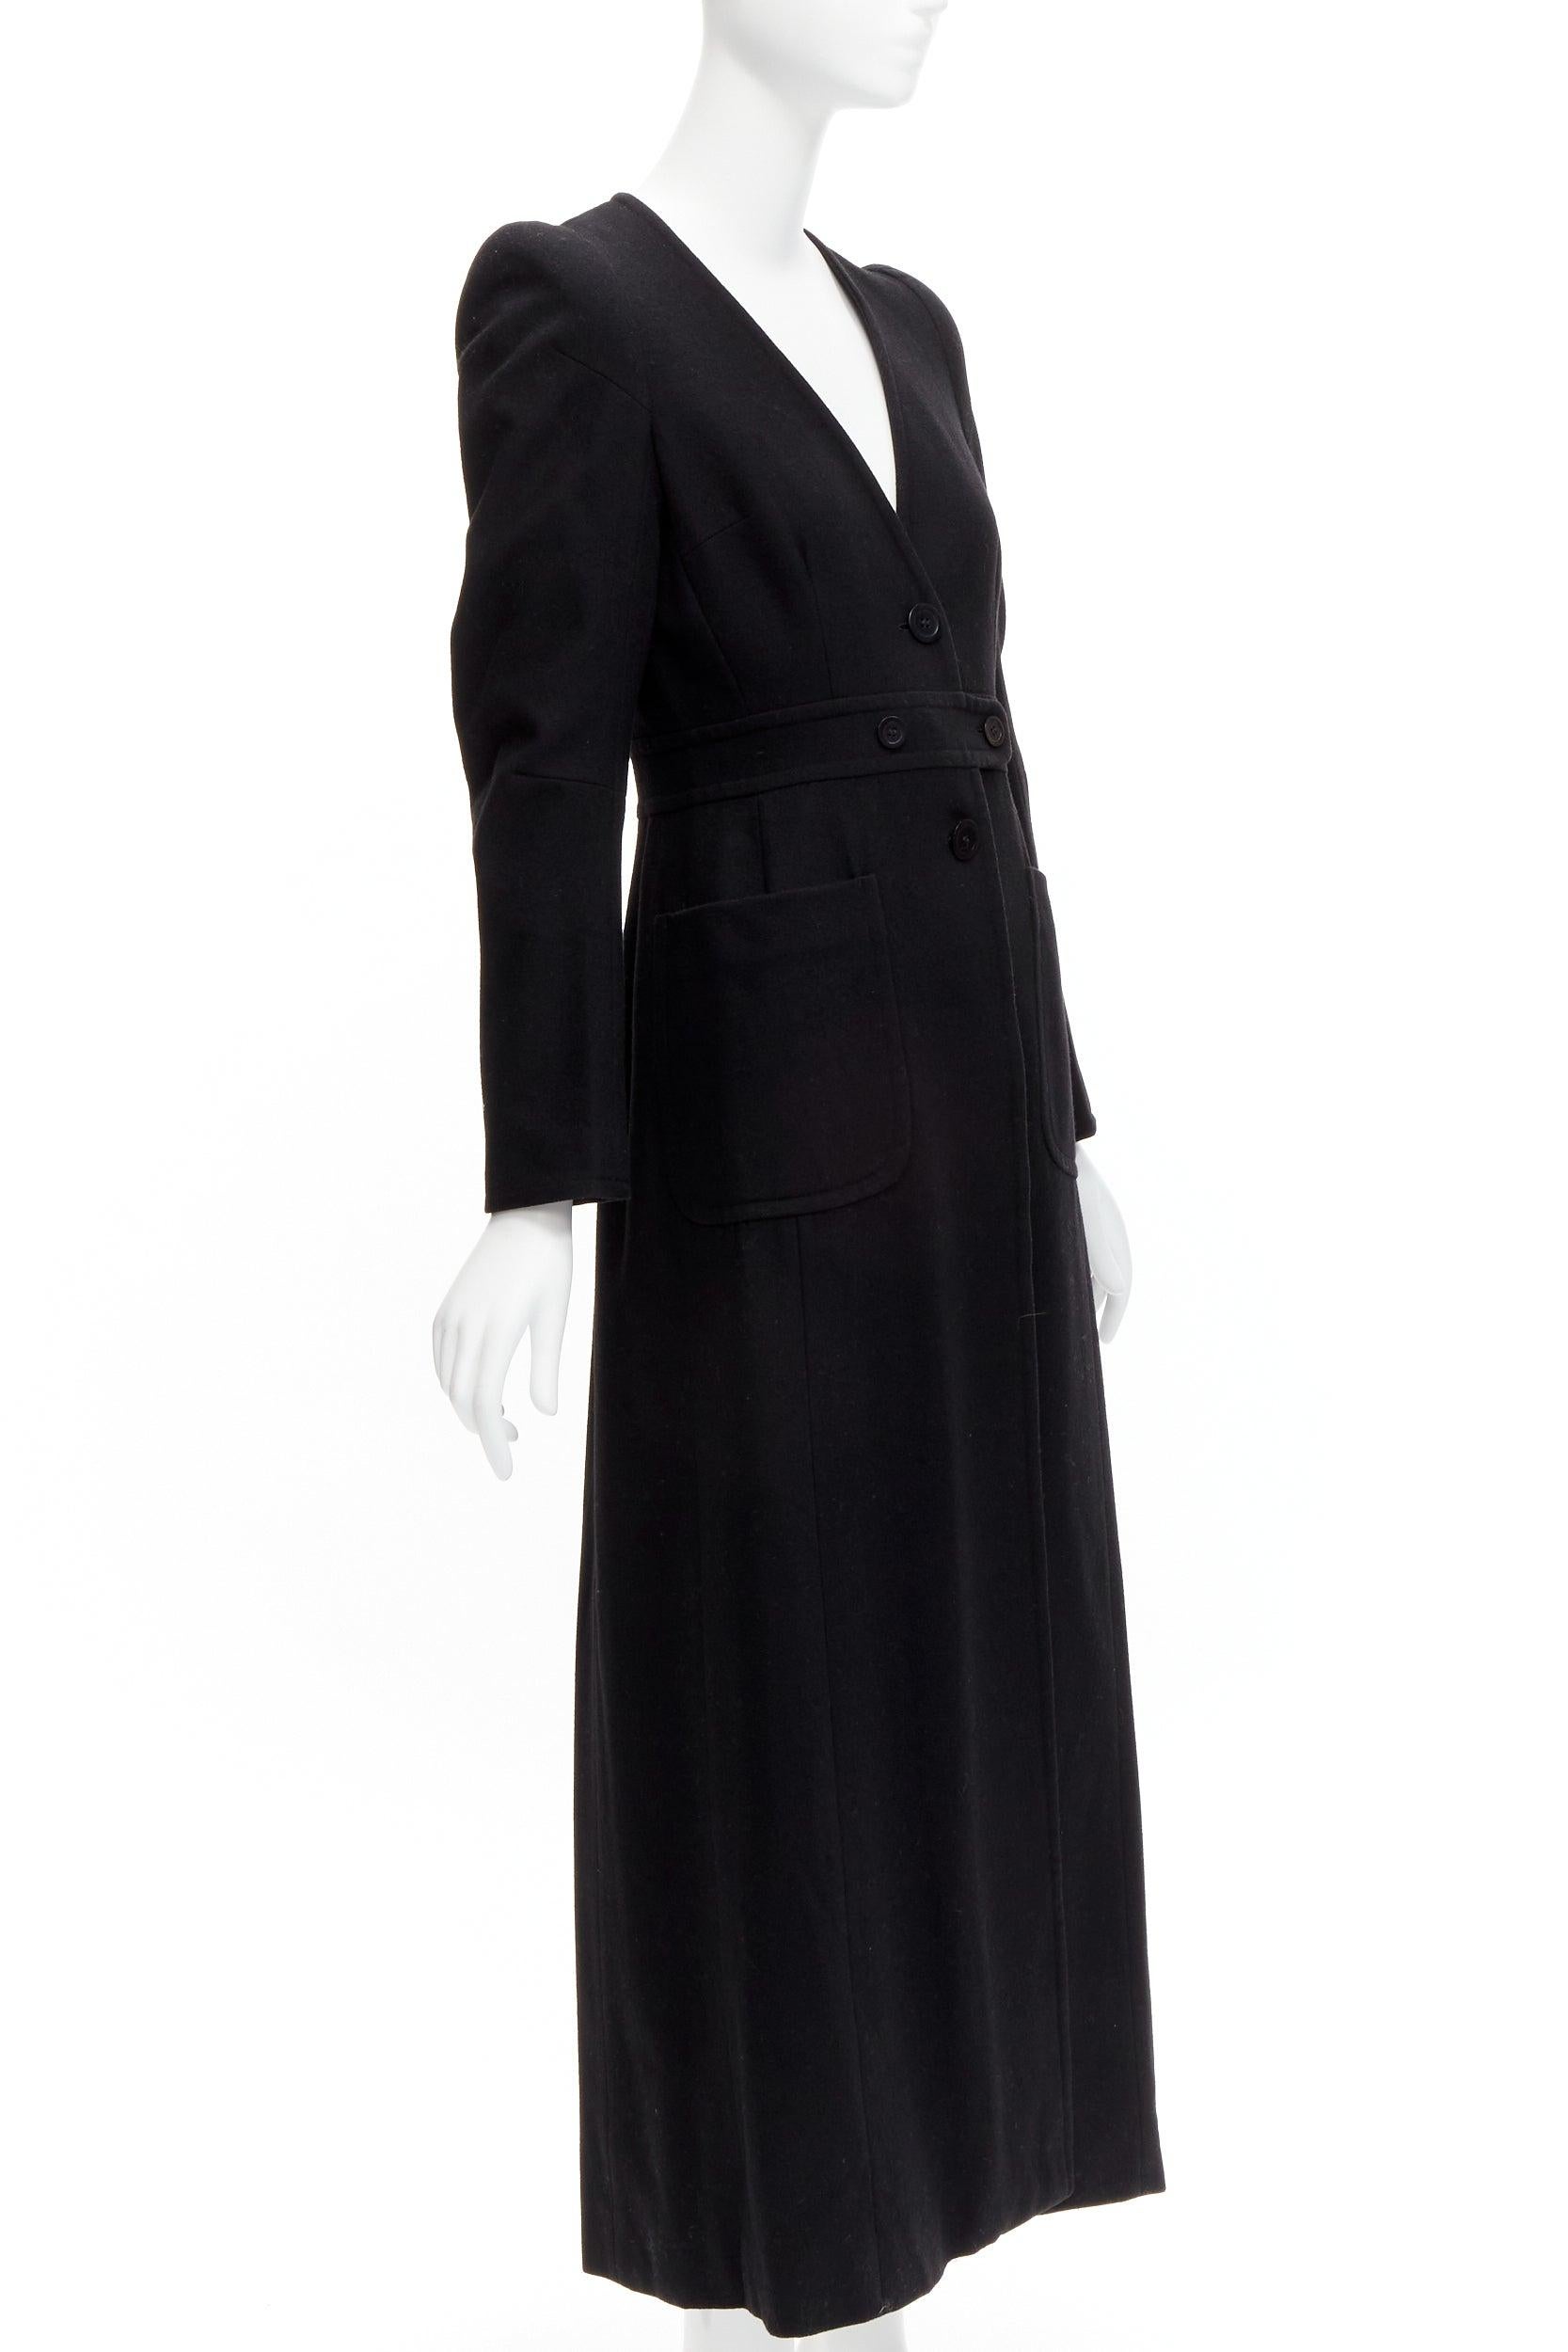 MAISON MARGIELA Manteau de cigarette long en laine vintage fendu sur le dos, taille FR 38 M, années 1990 Pour femmes en vente